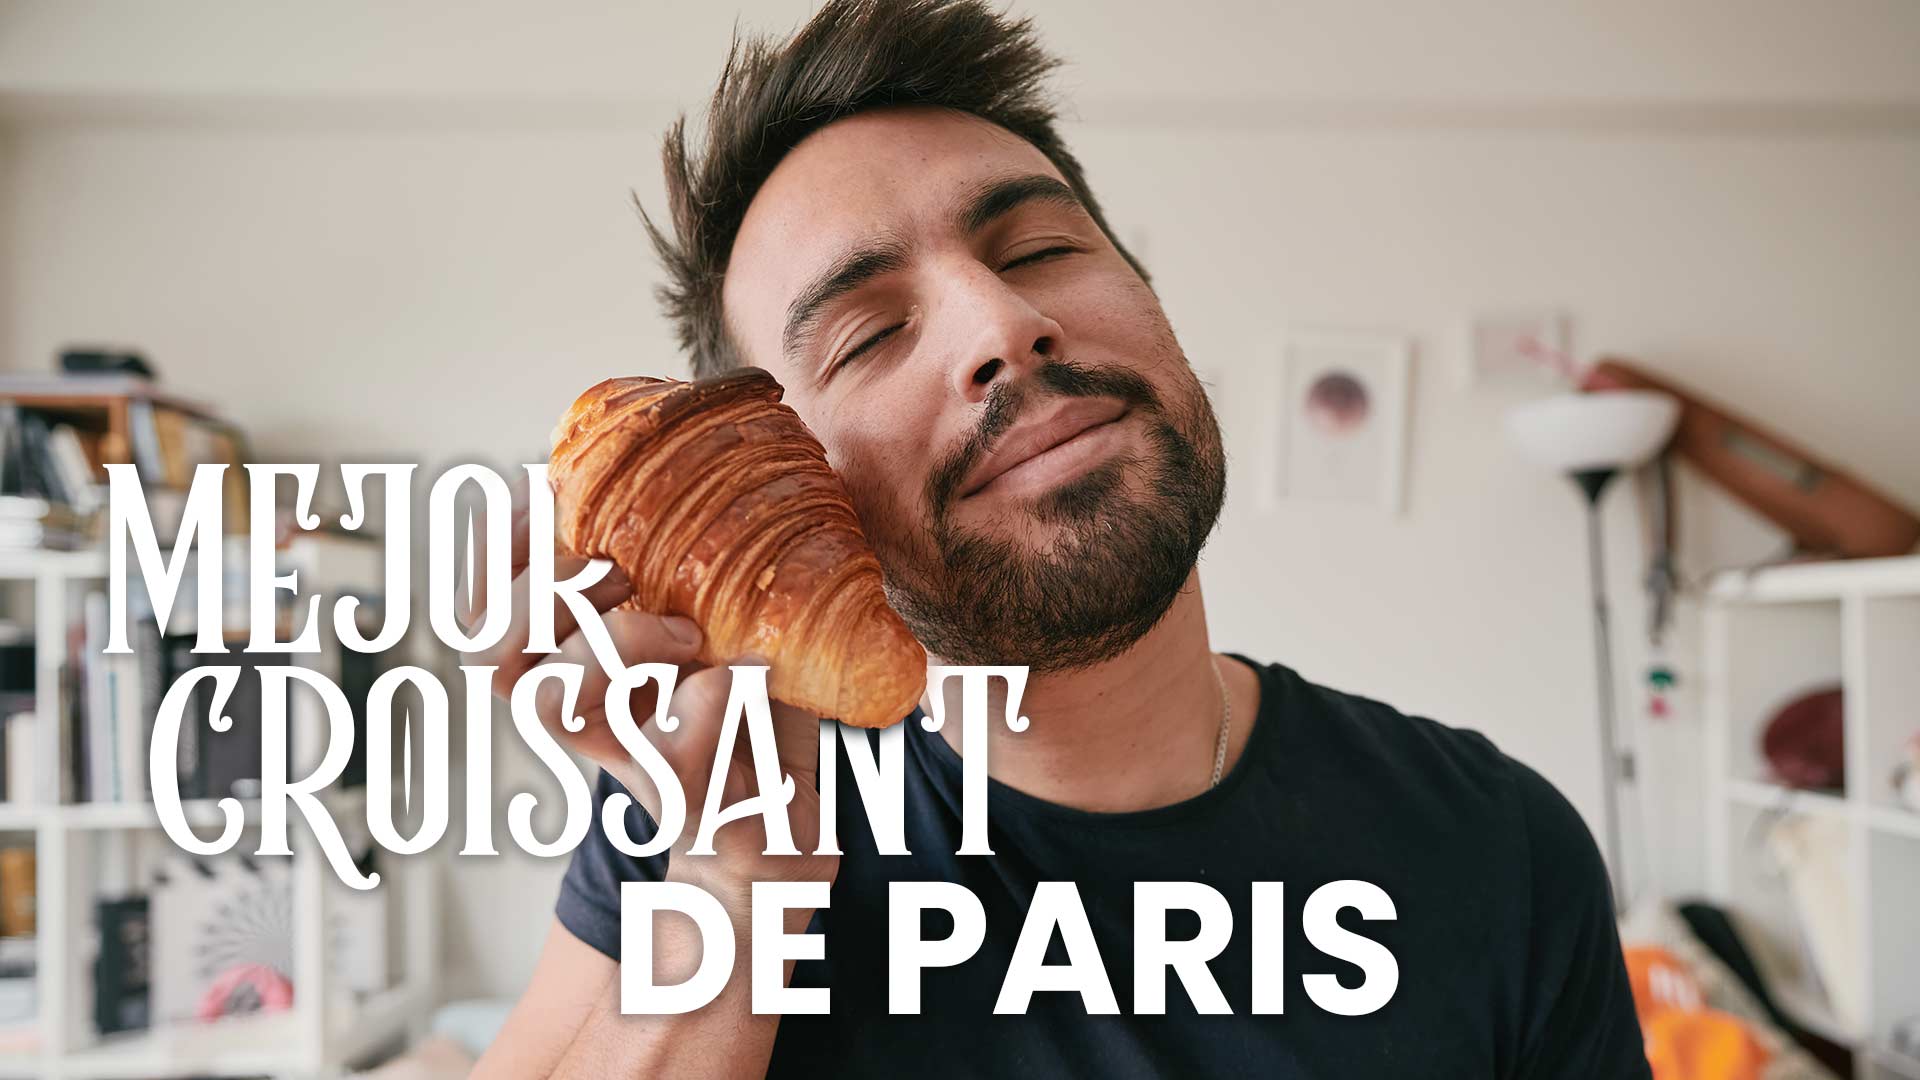 Dónde se come la mejor croissant de París